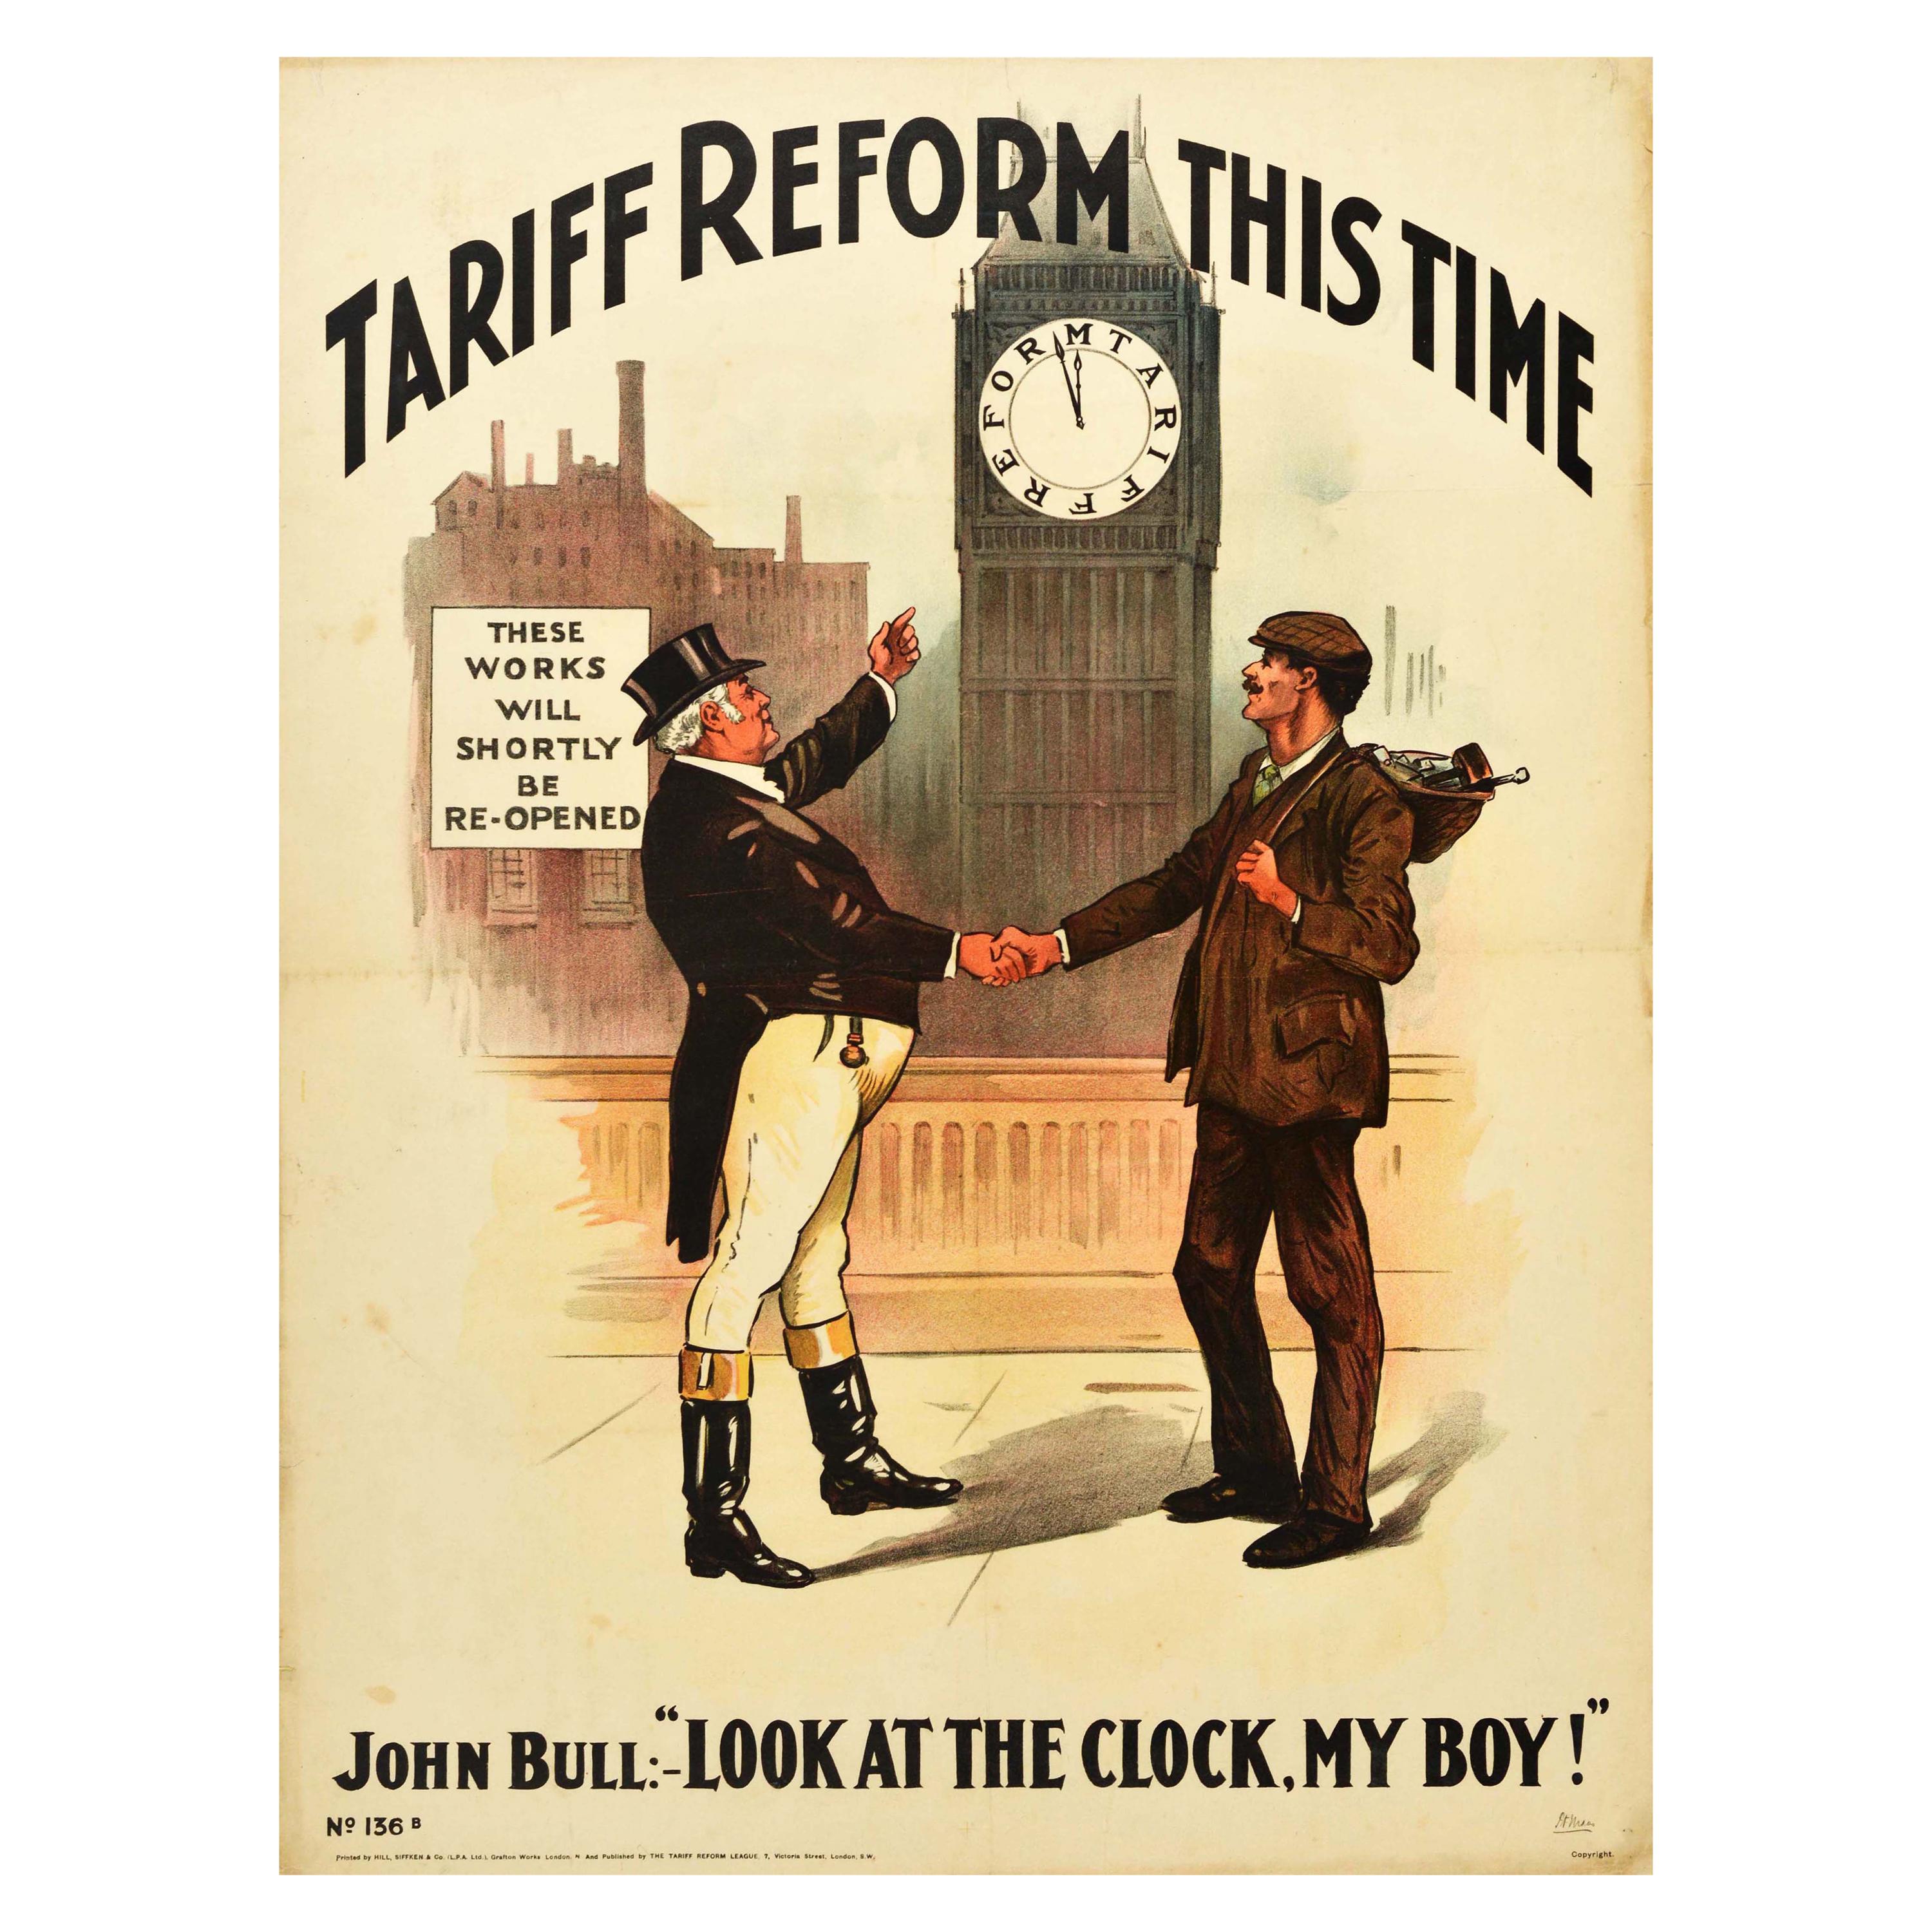 Original Antique Political Poster Tariff Reform This Time Clock John Bull Design